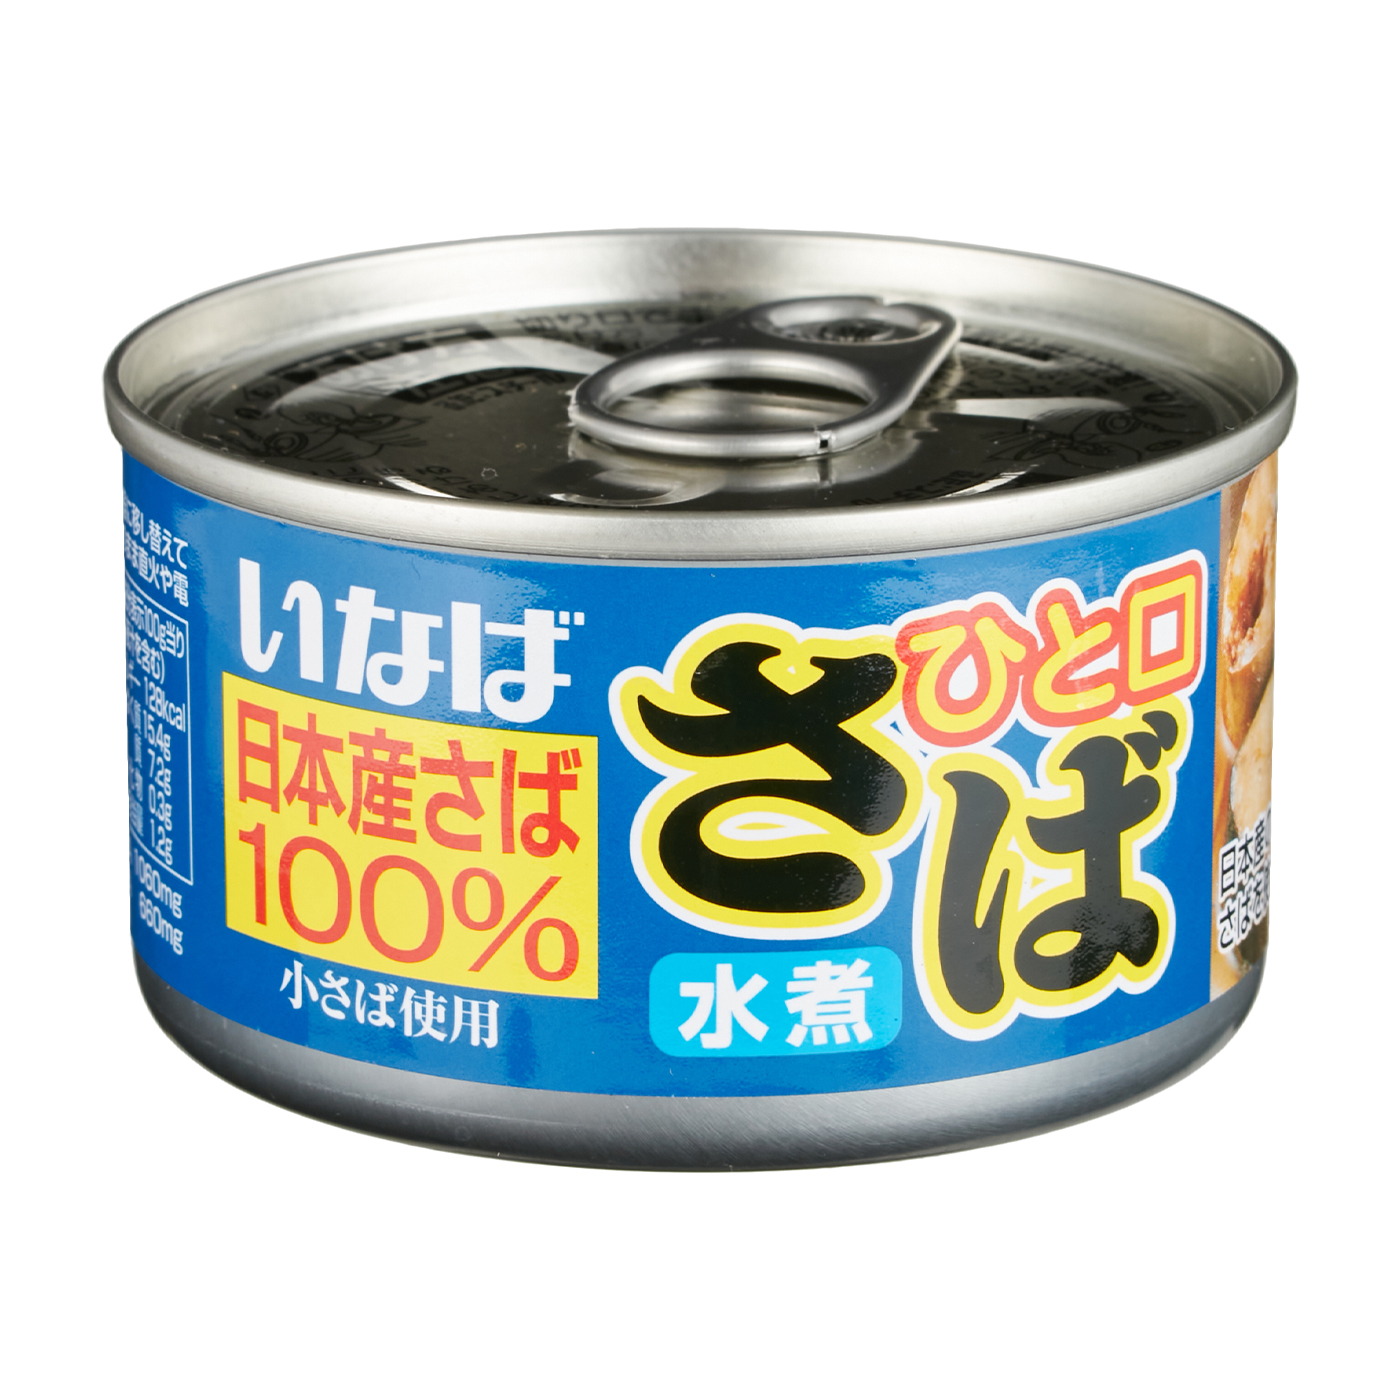 信田缶詰 さばの水煮缶詰 (190g)3缶セット